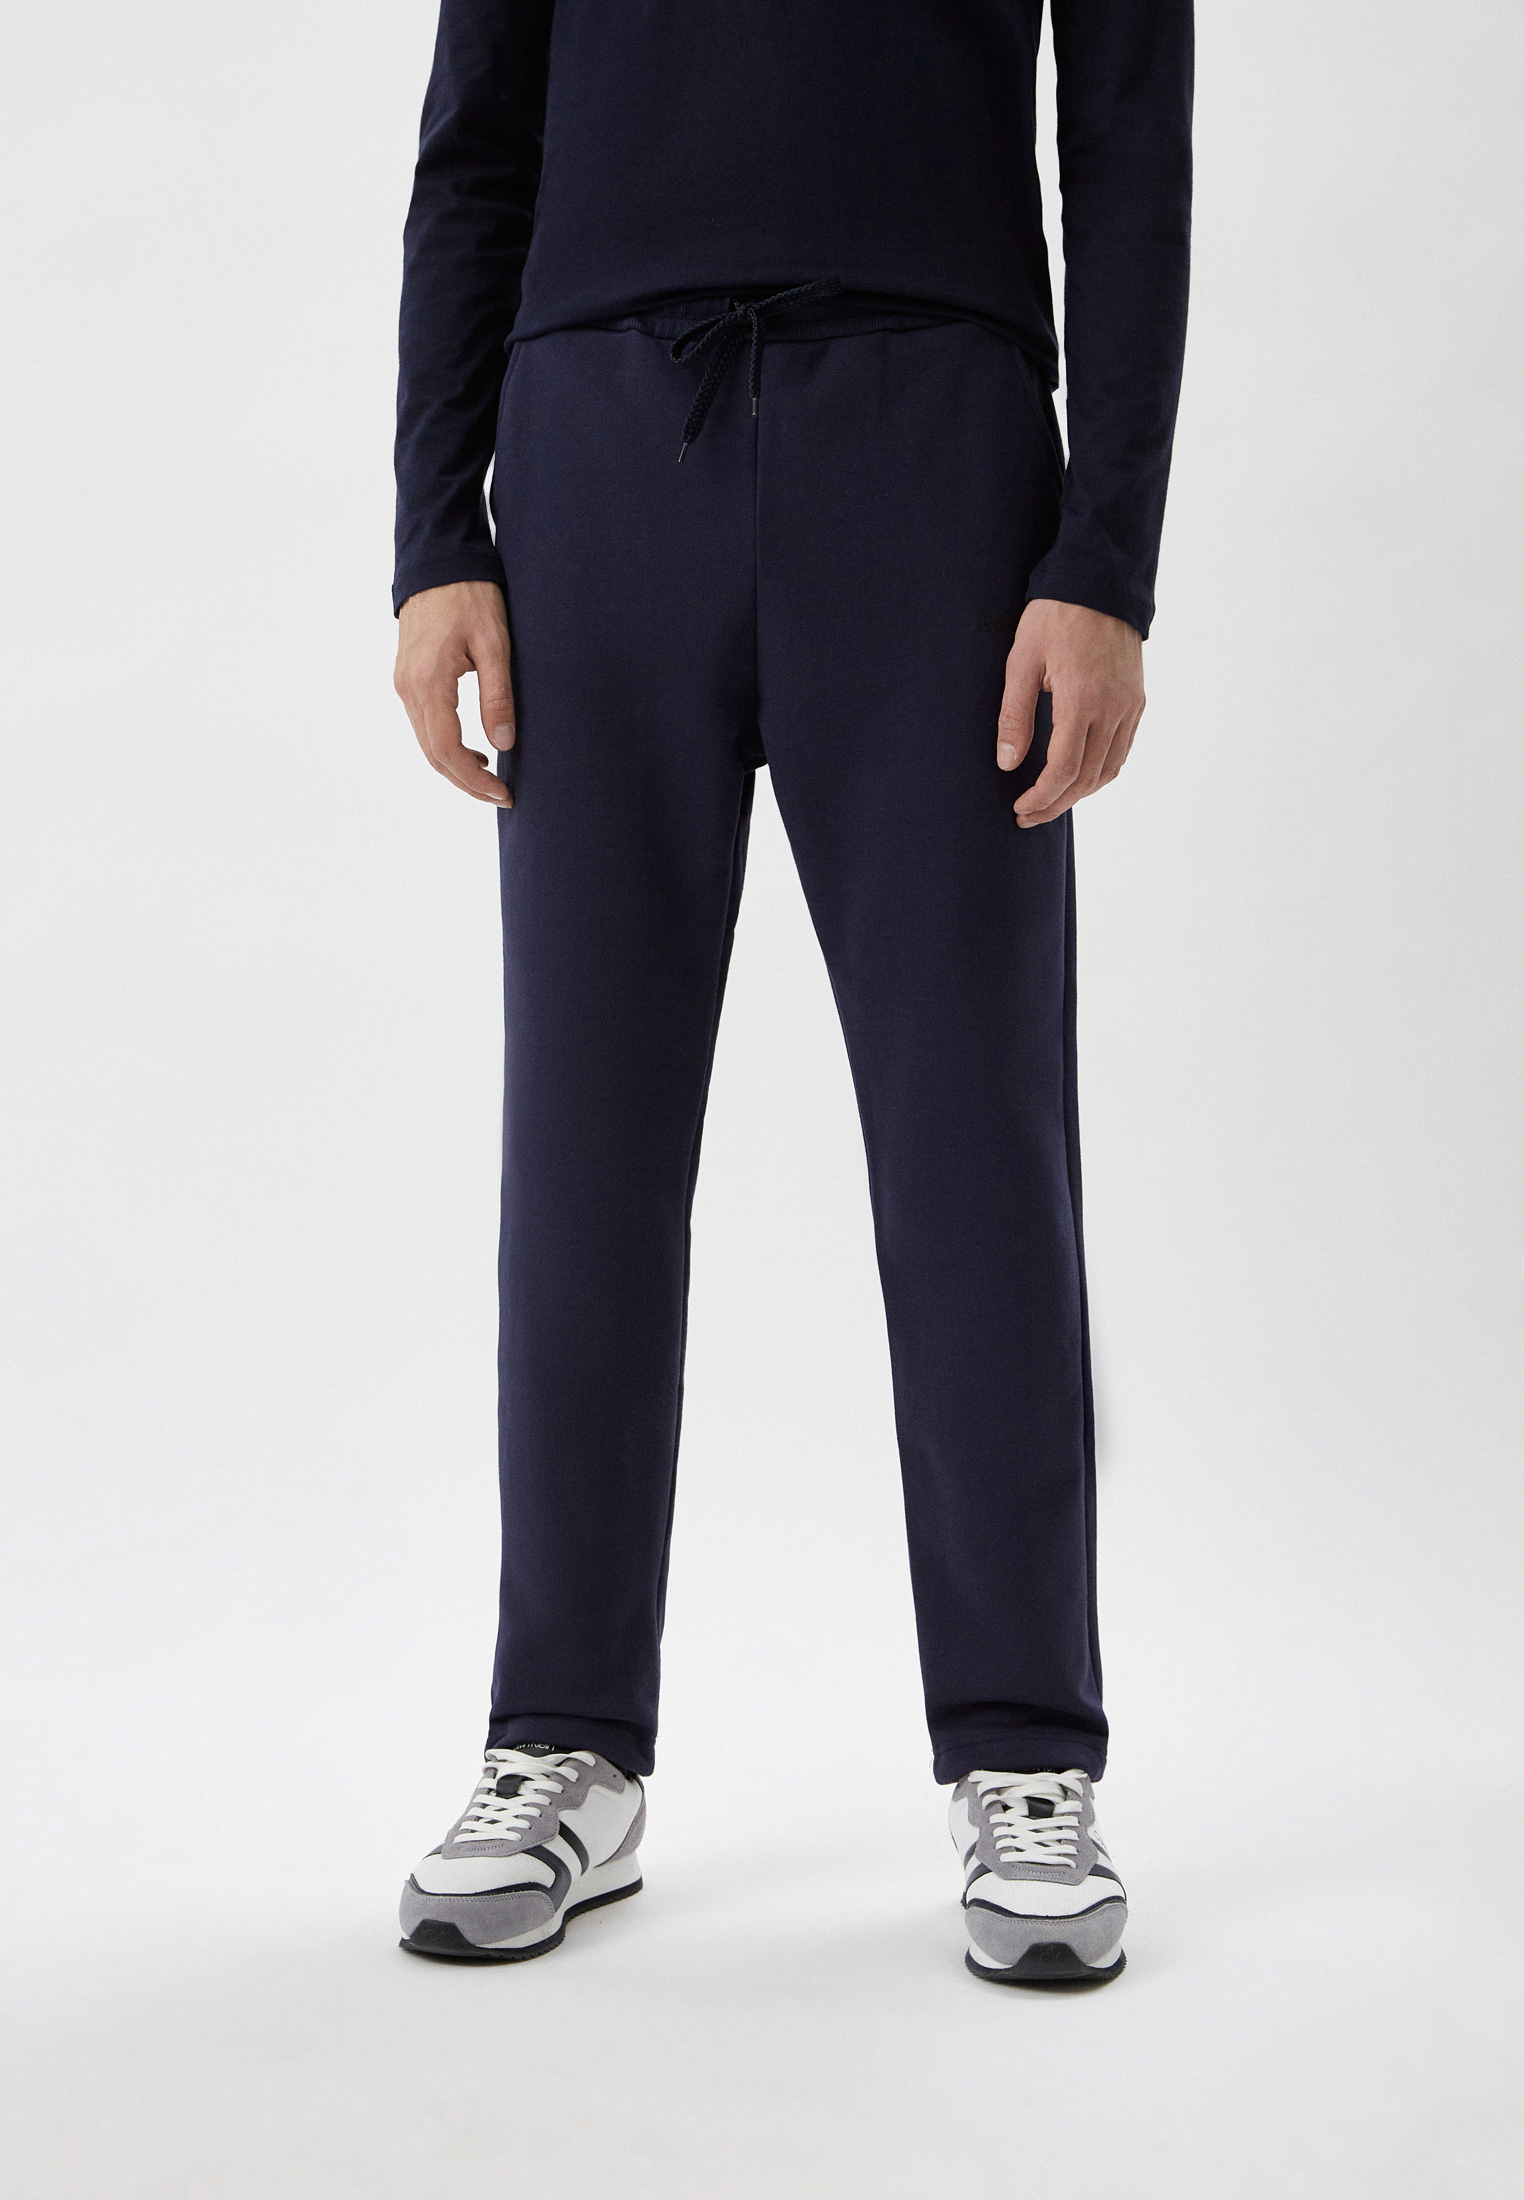 Мужские спортивные брюки Baldinini (Балдинини) M14: изображение 1